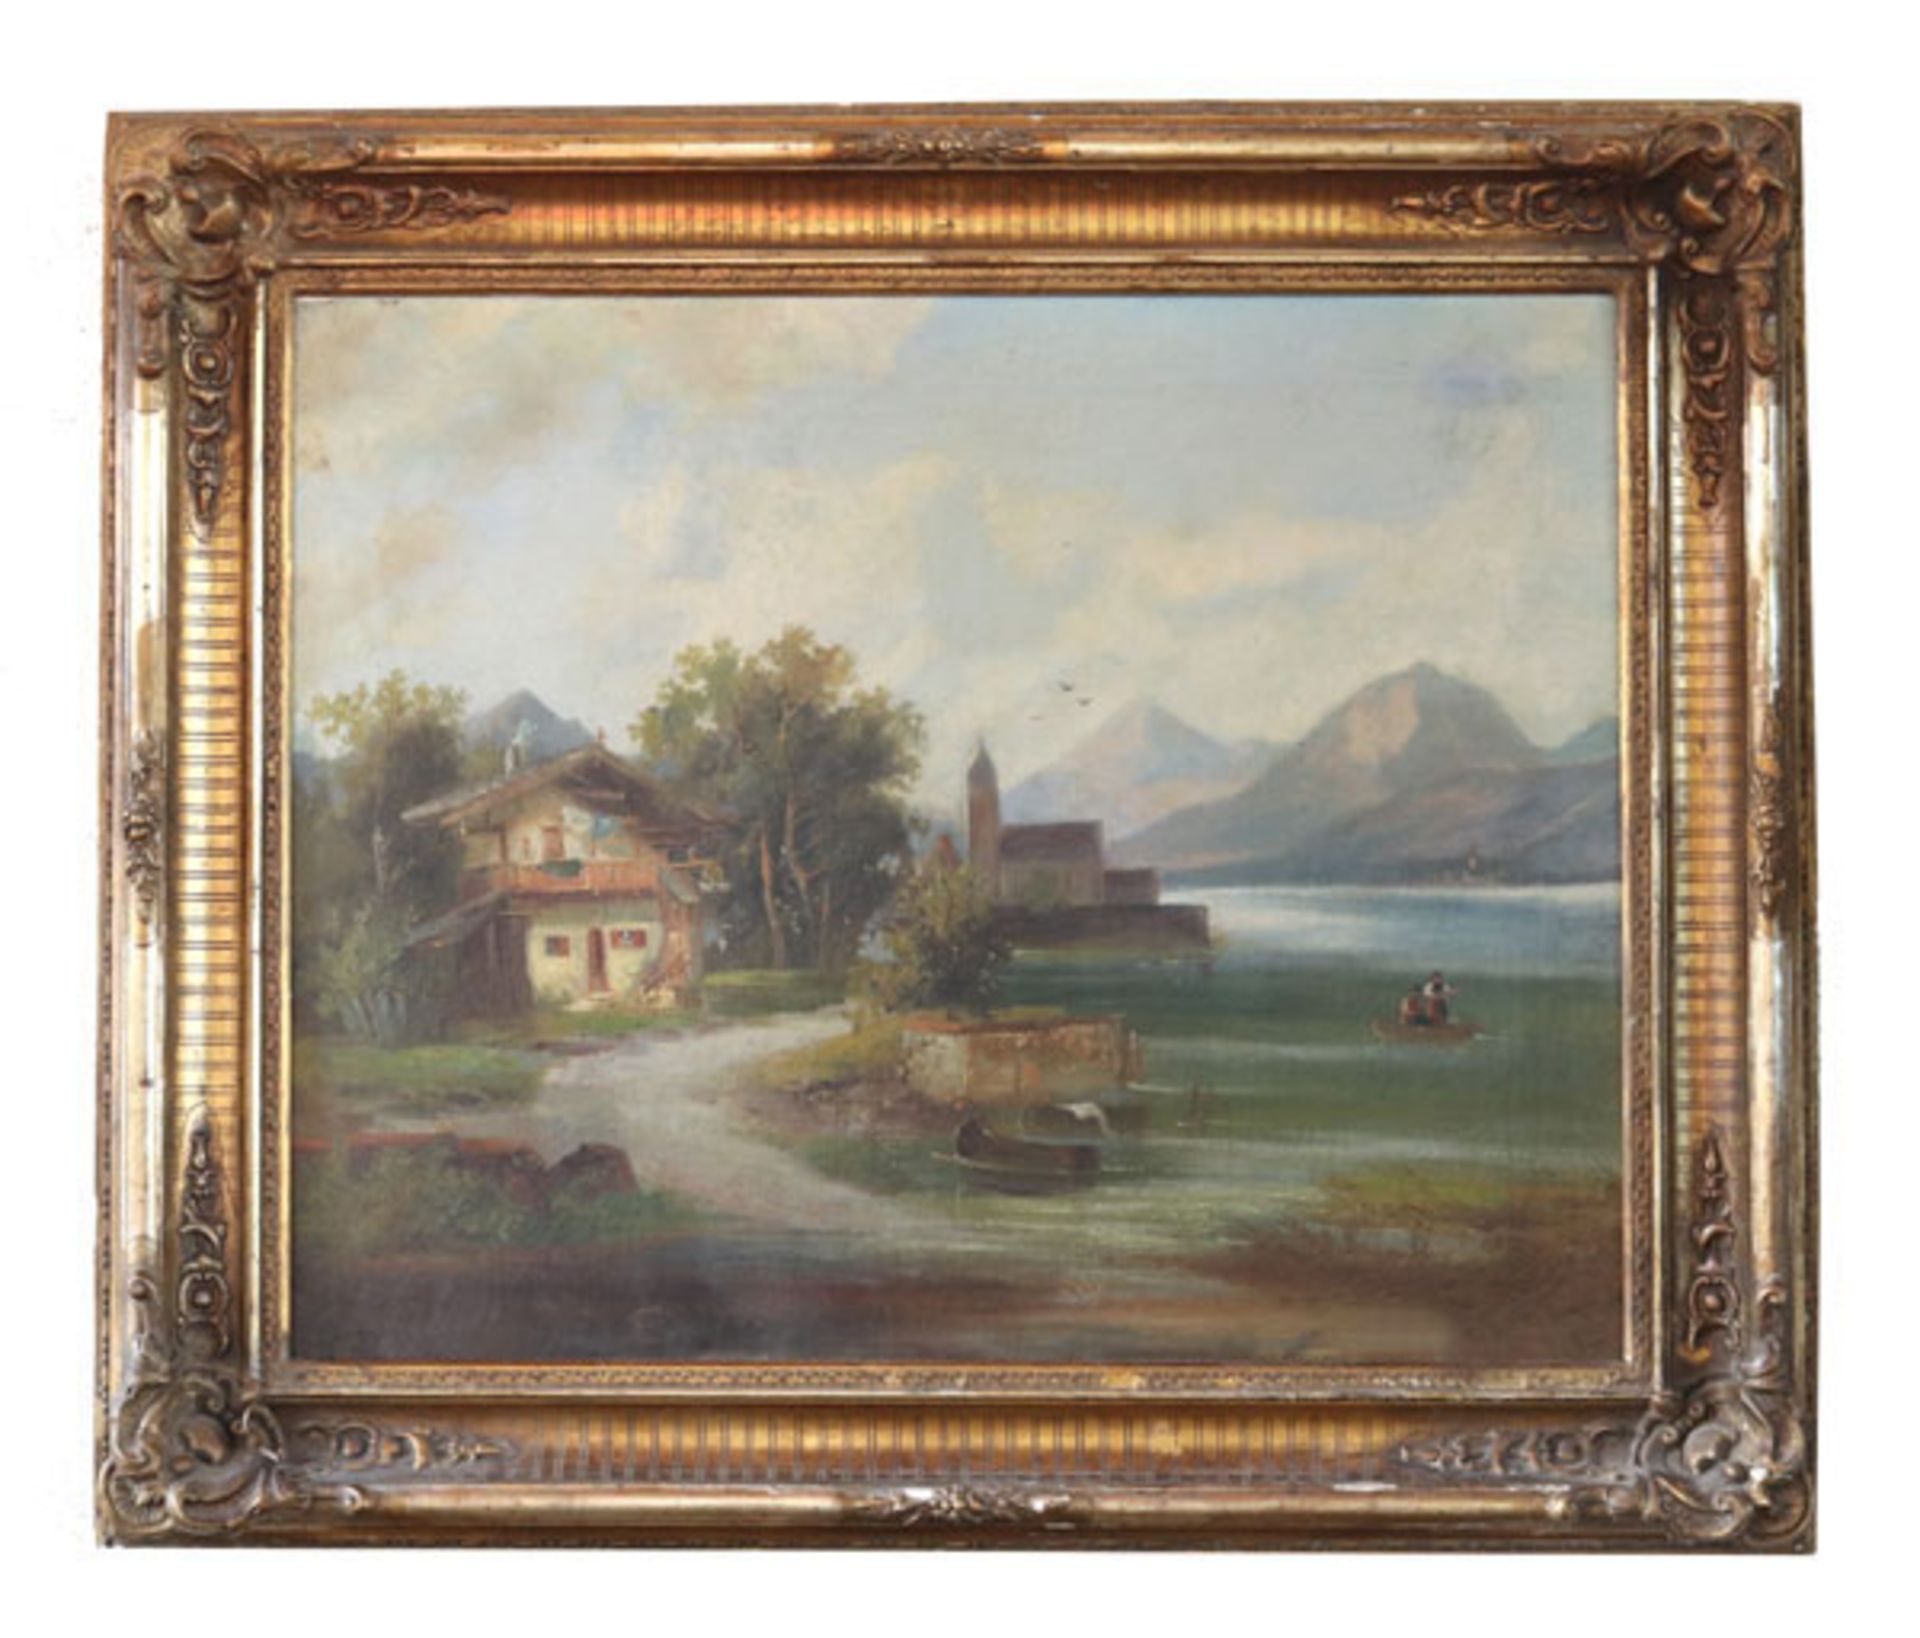 Gemälde ÖL/LW 'Bayerische Landschaft-Szenerie mit Kirche und Haus am See', LW doubliert,